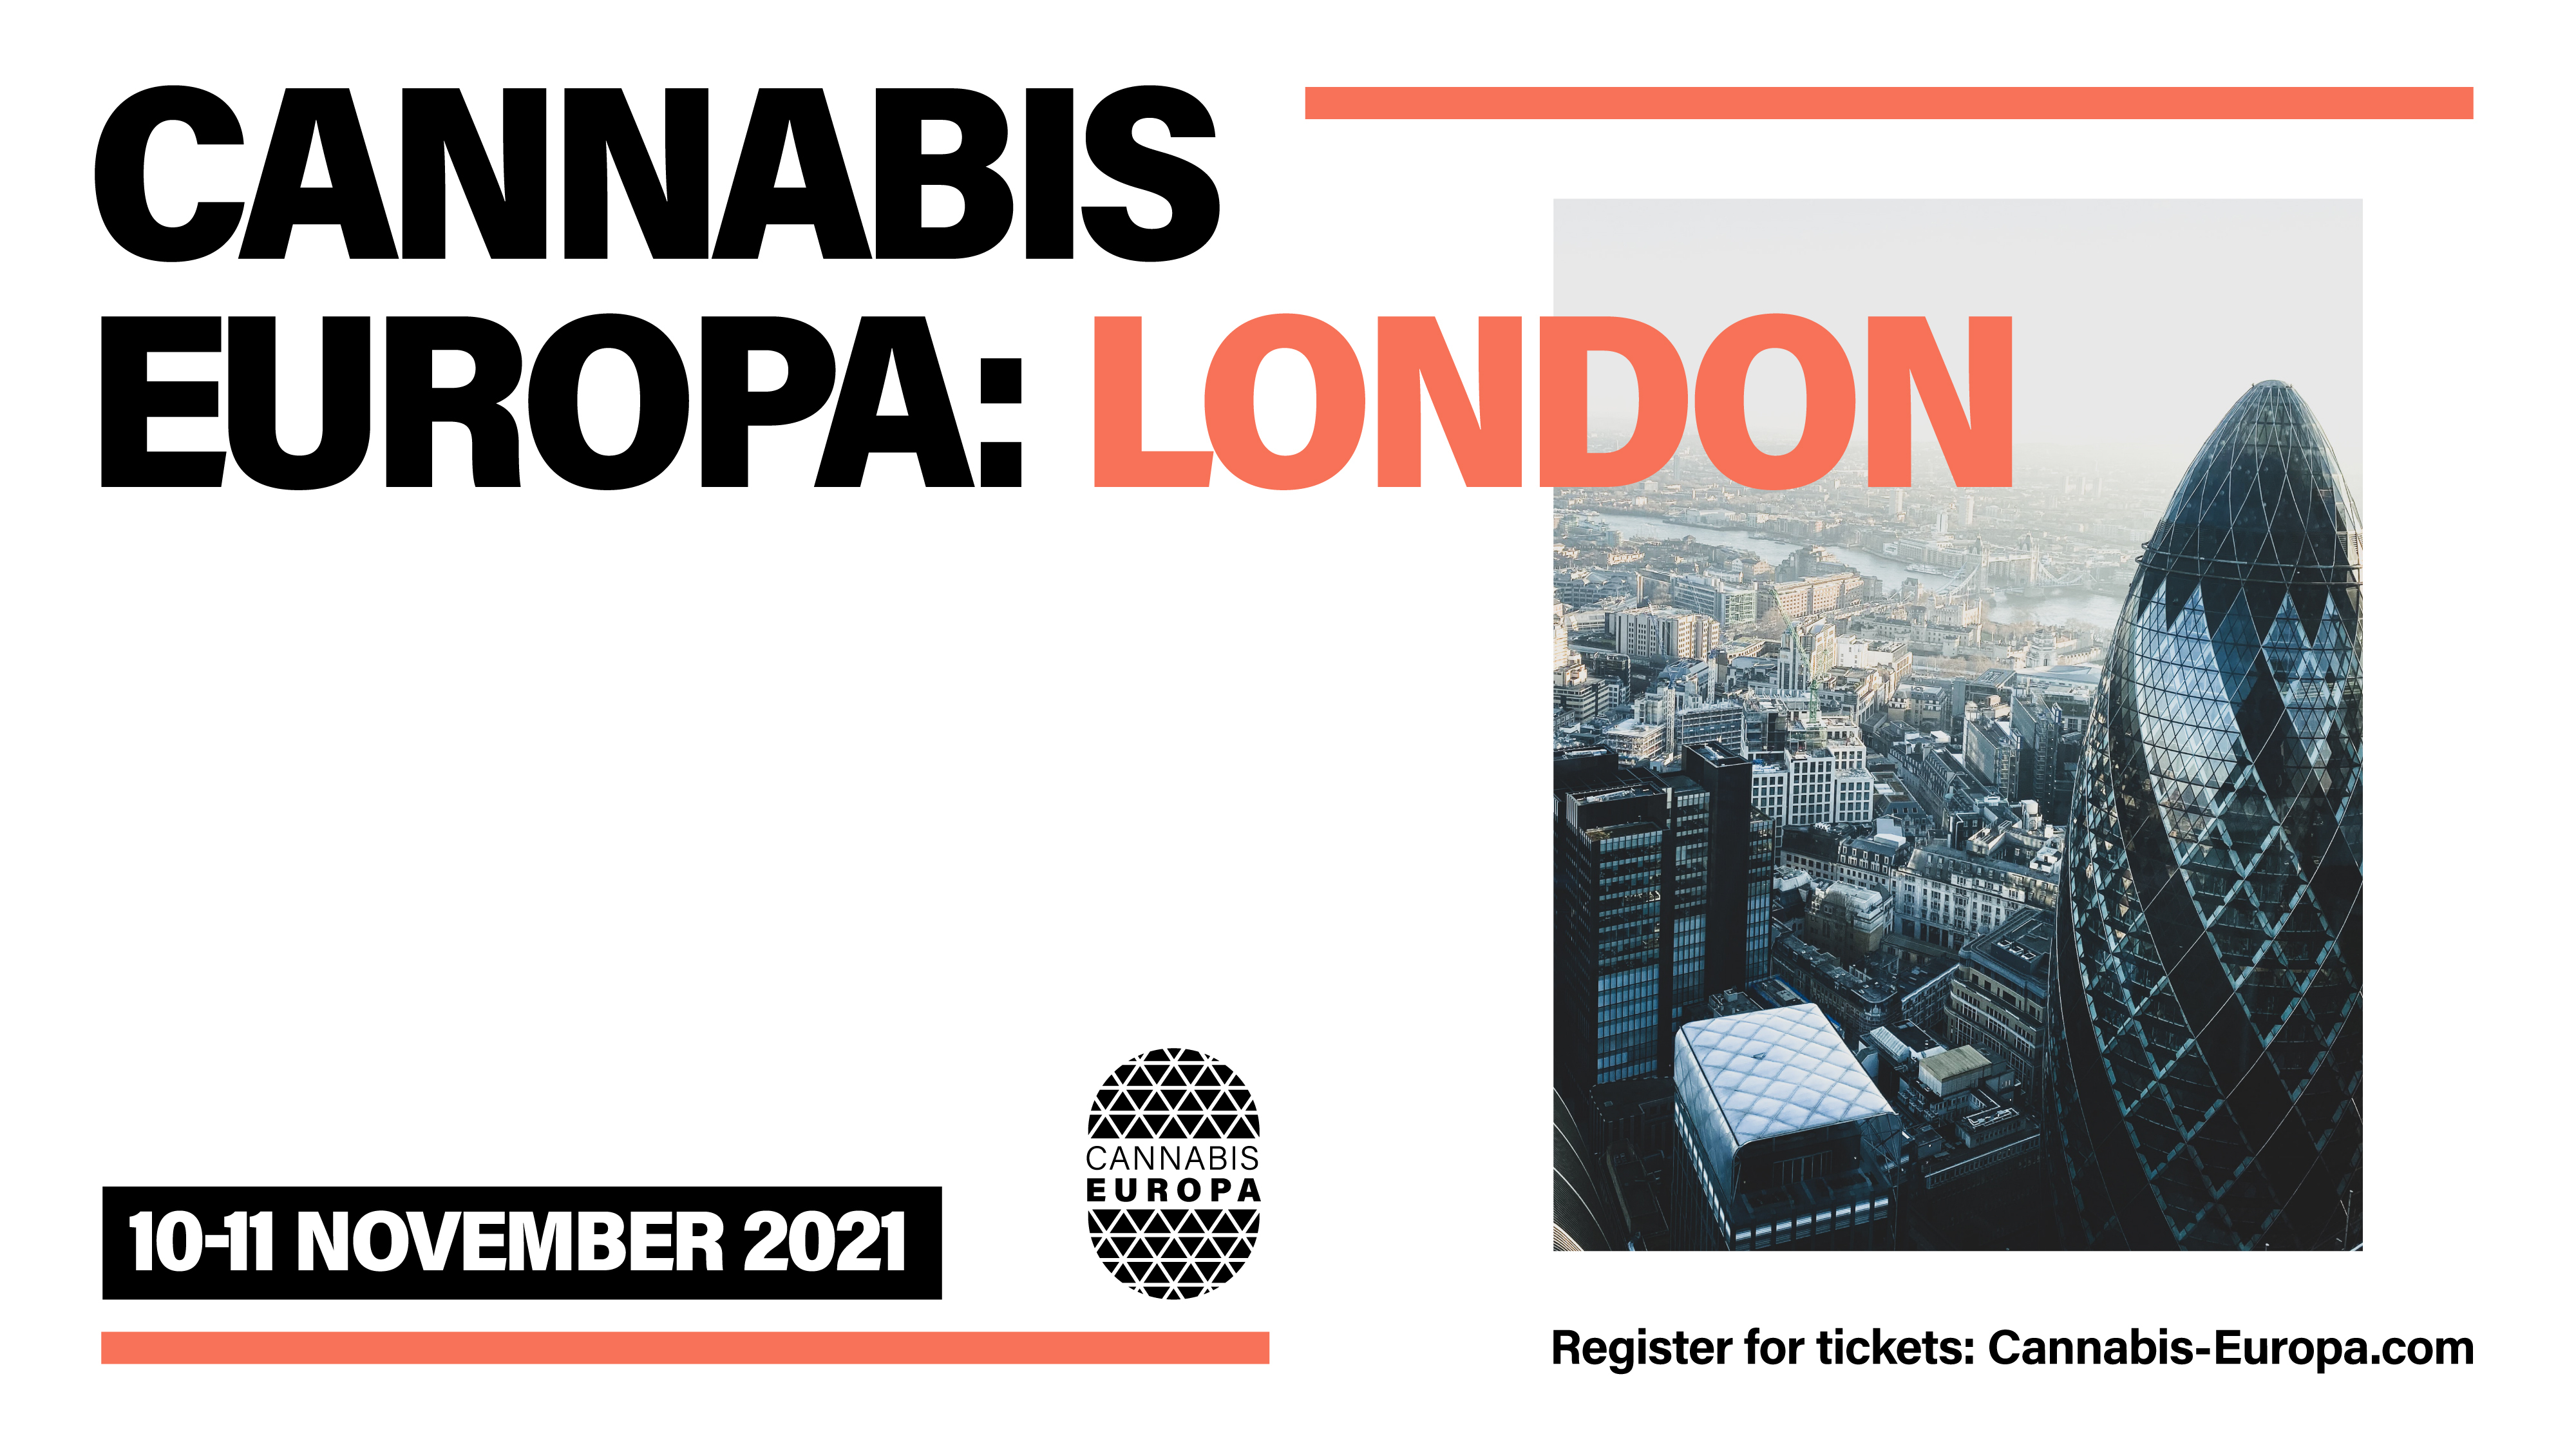 Cannabis Europa: London